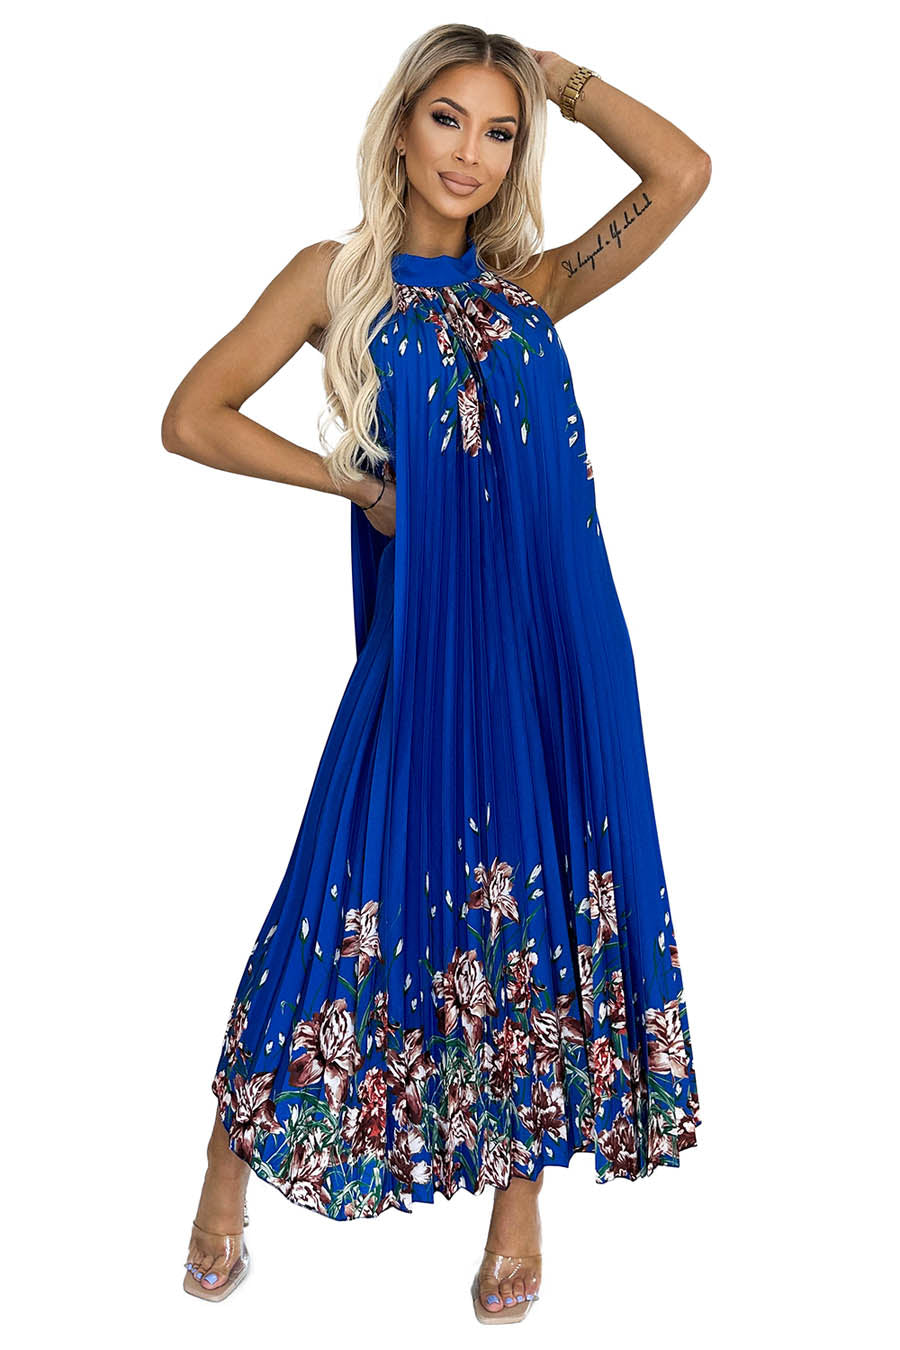 Γυναικείο φόρεμα Ester, Μπλε 1